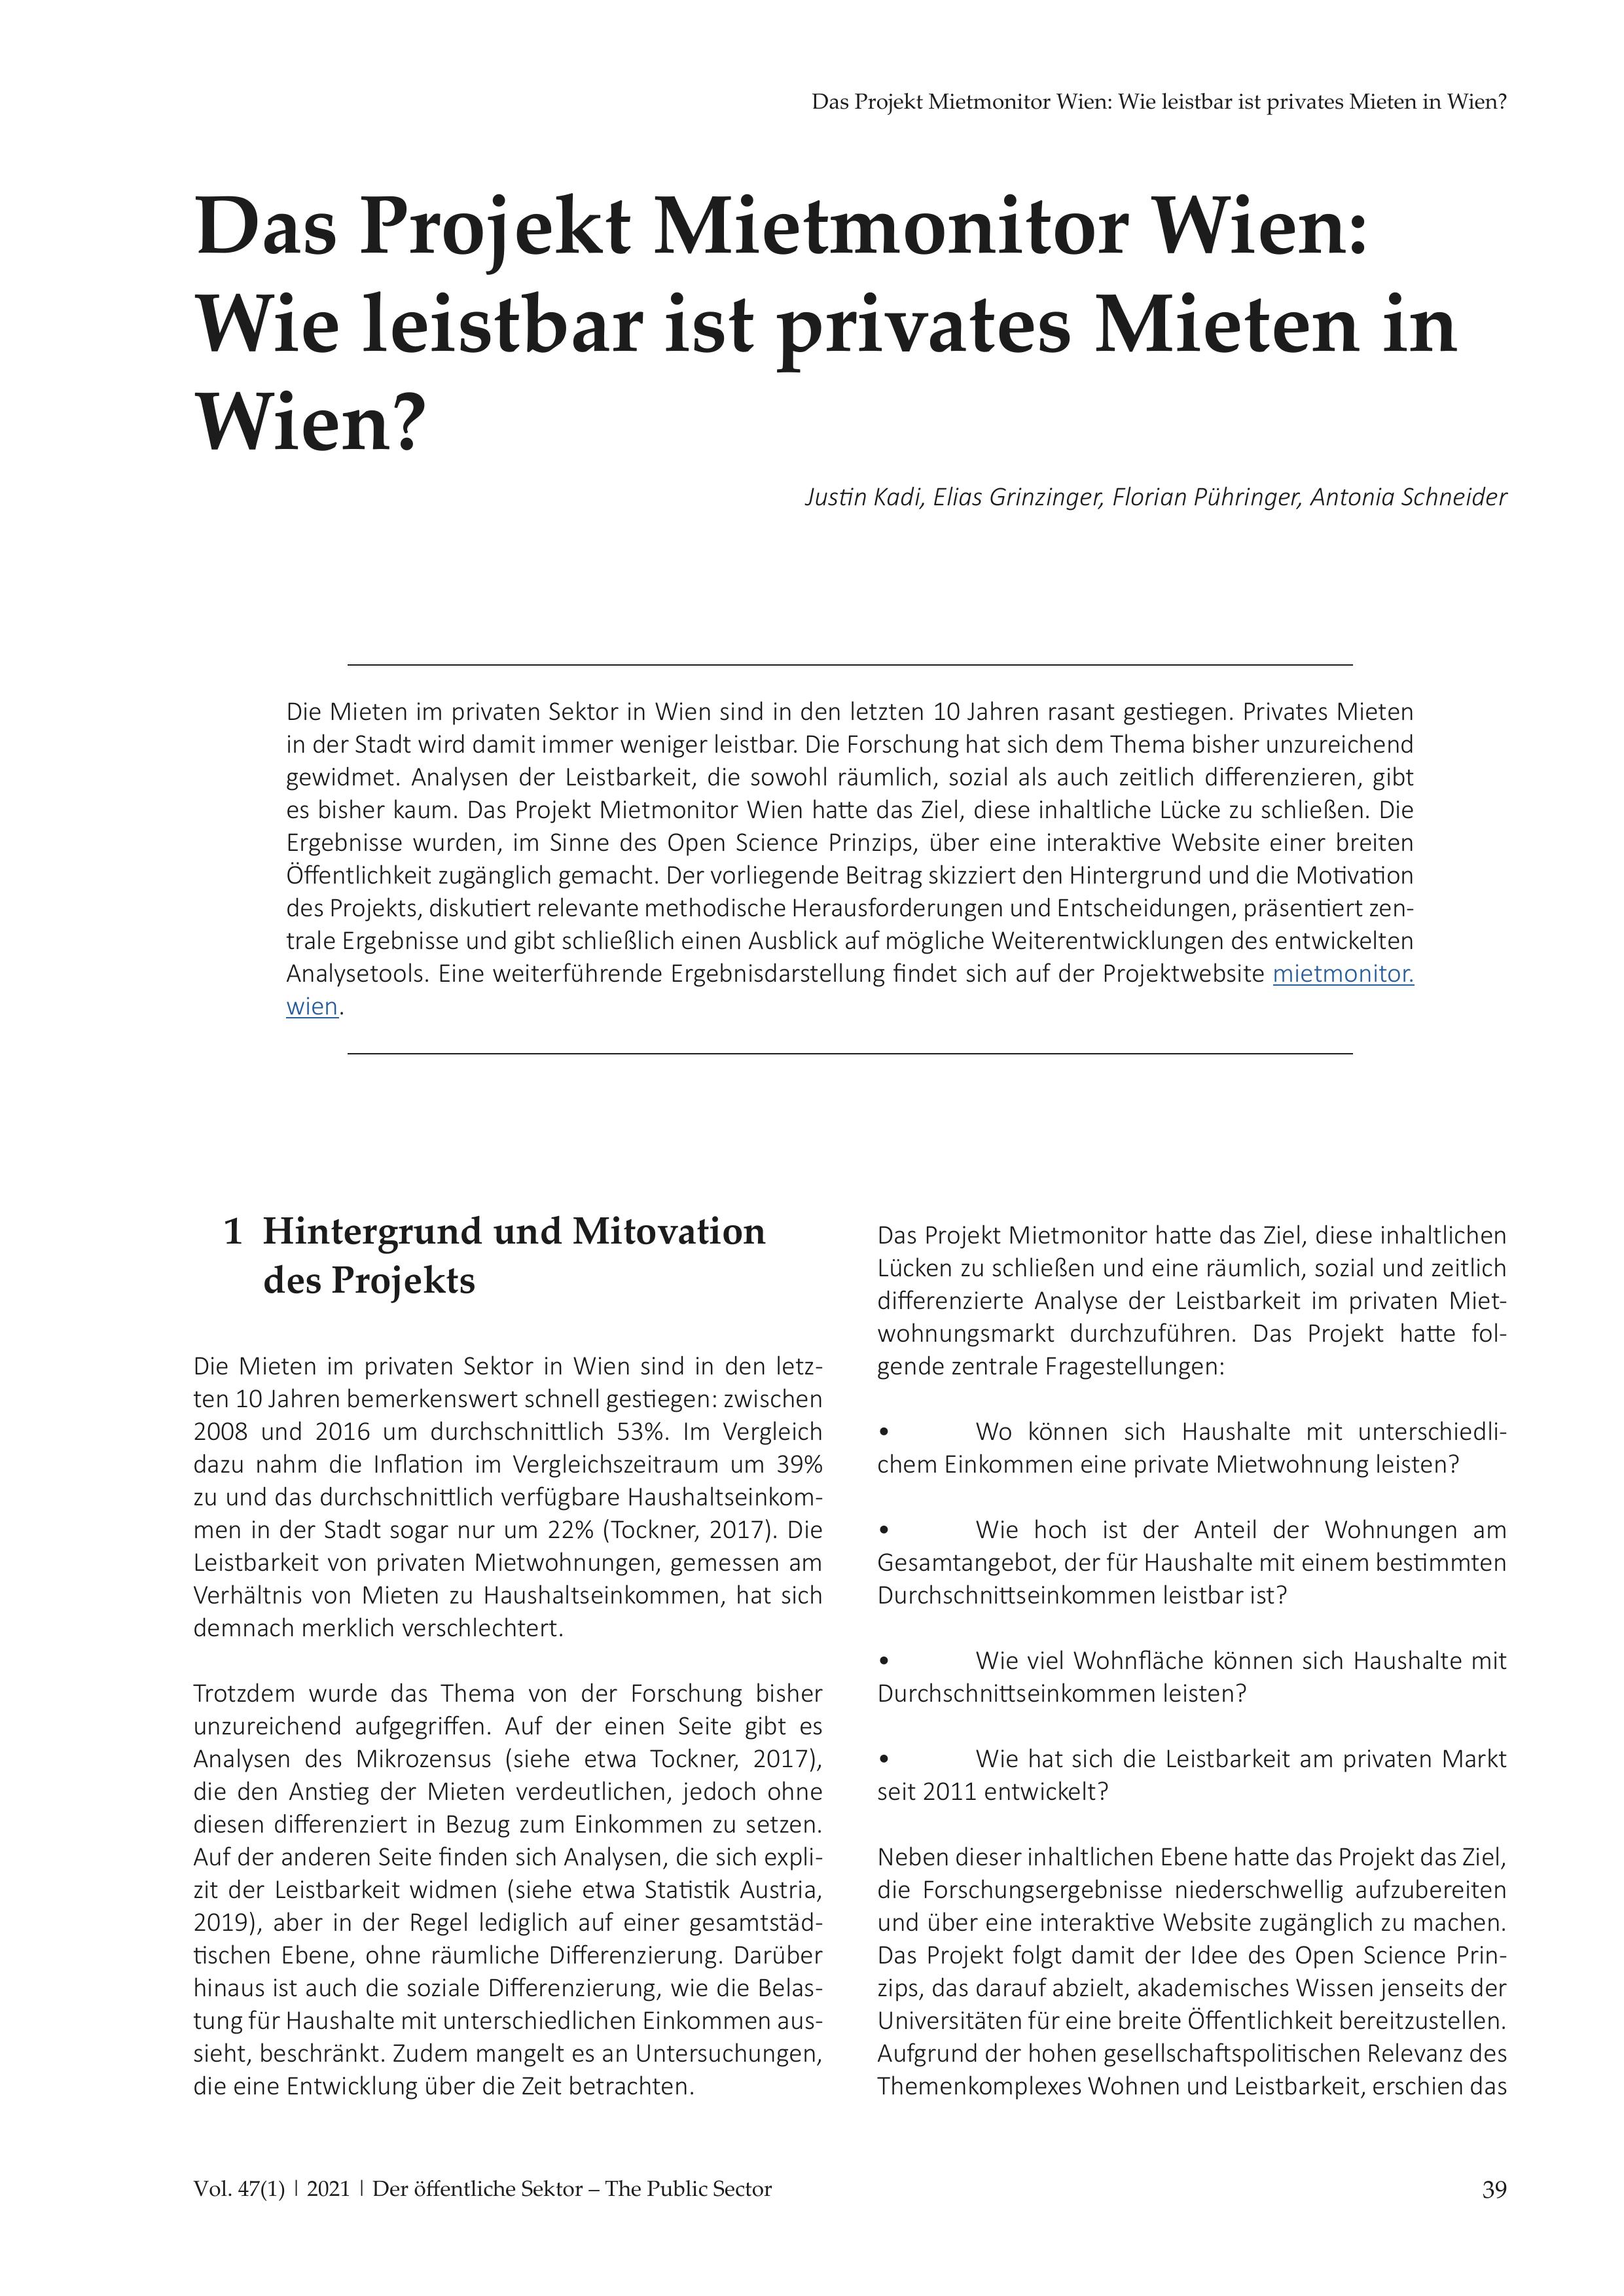 Das Projekt Mietmonitor Wien: Wie leistbar ist privates Mieten in Wien?